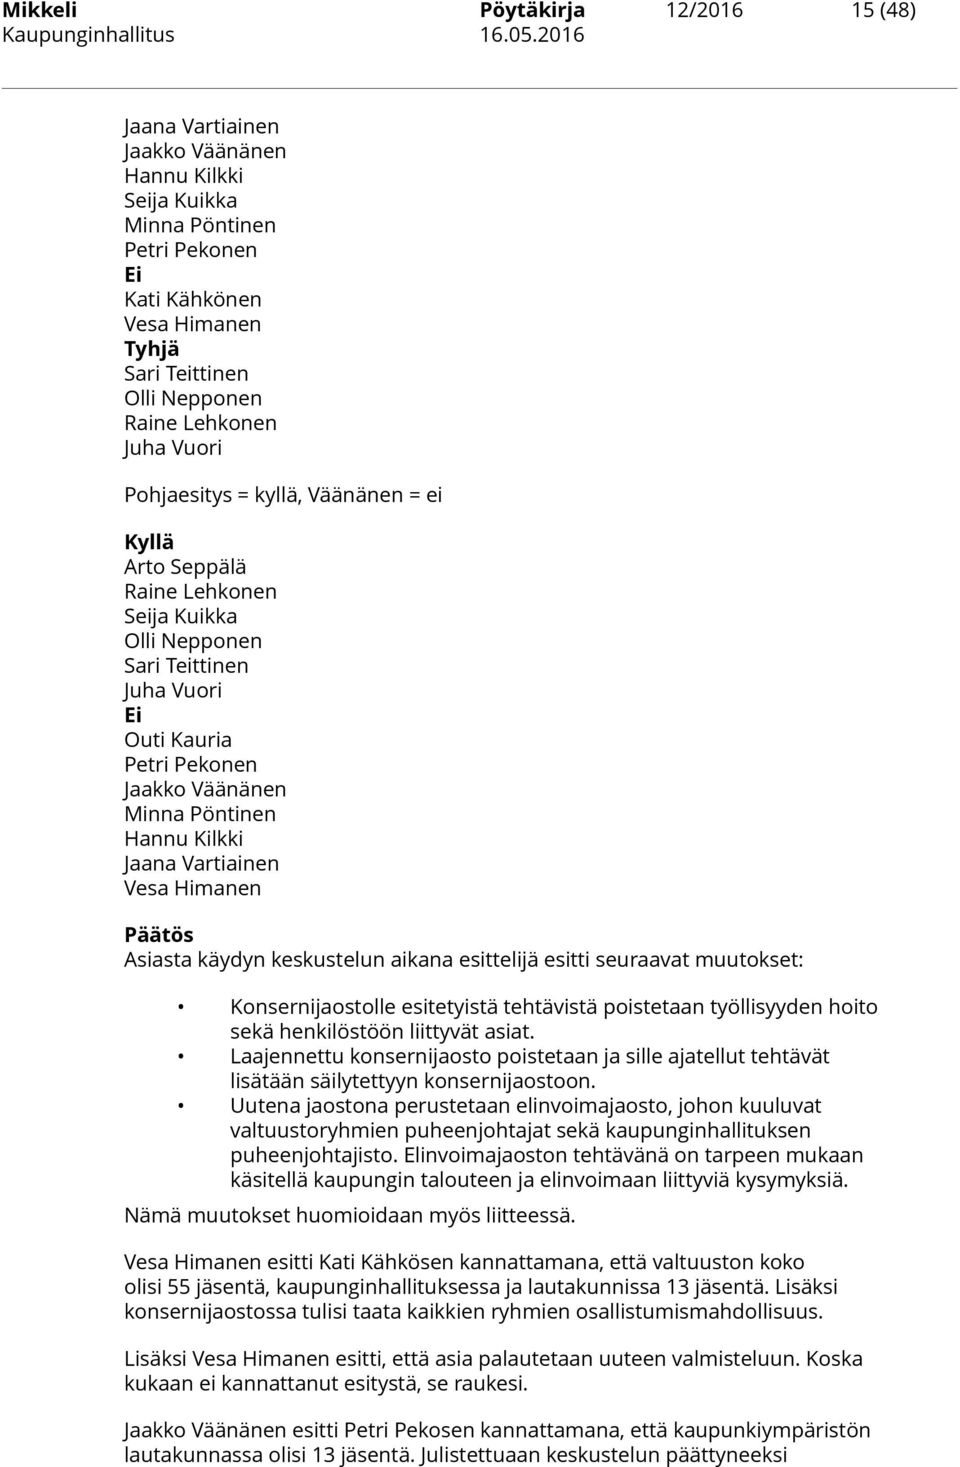 Pöntinen Hannu Kilkki Jaana Vartiainen Vesa Himanen Päätös Asiasta käydyn keskustelun aikana esittelijä esitti seuraavat muutokset: Konsernijaostolle esitetyistä tehtävistä poistetaan työllisyyden